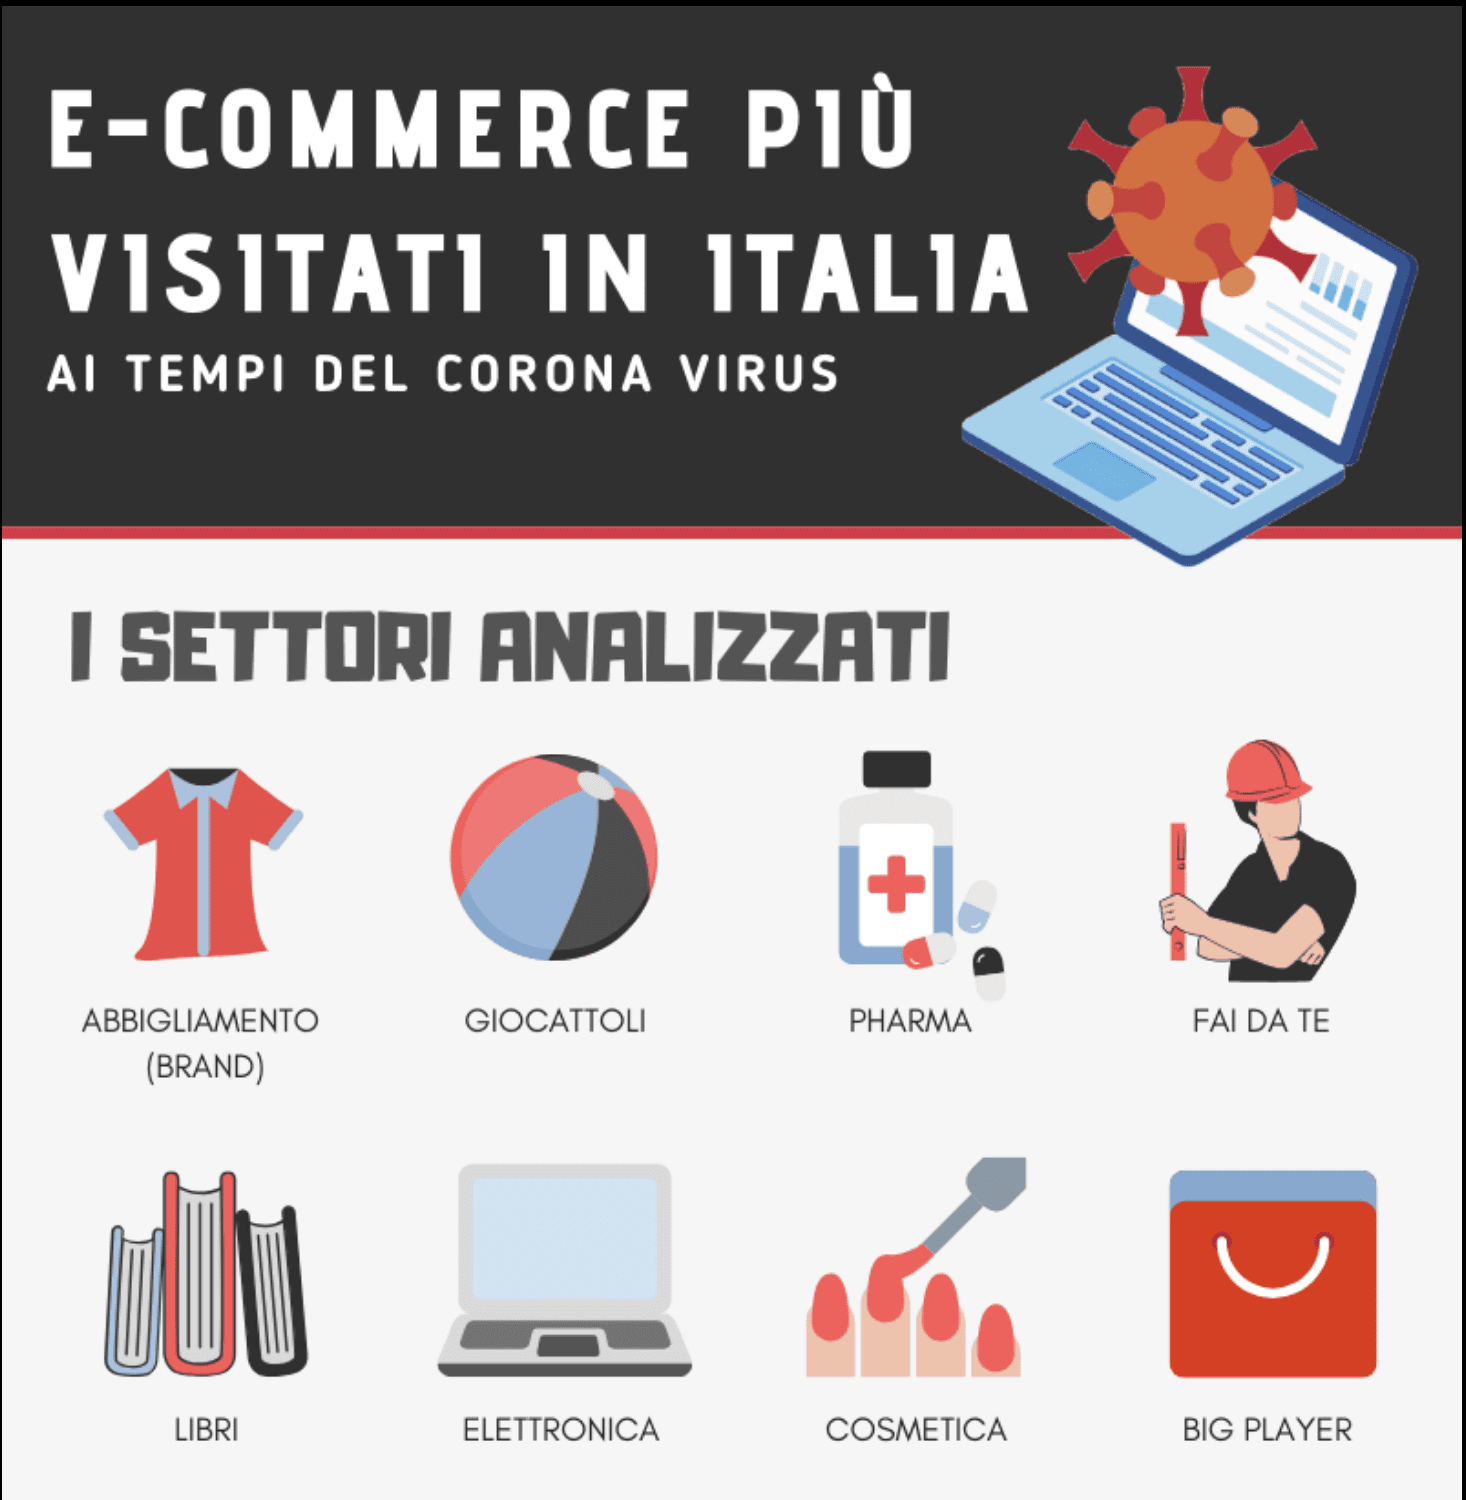  Gli e-commerce più visitati dagli italiani ai tempi del corona virus